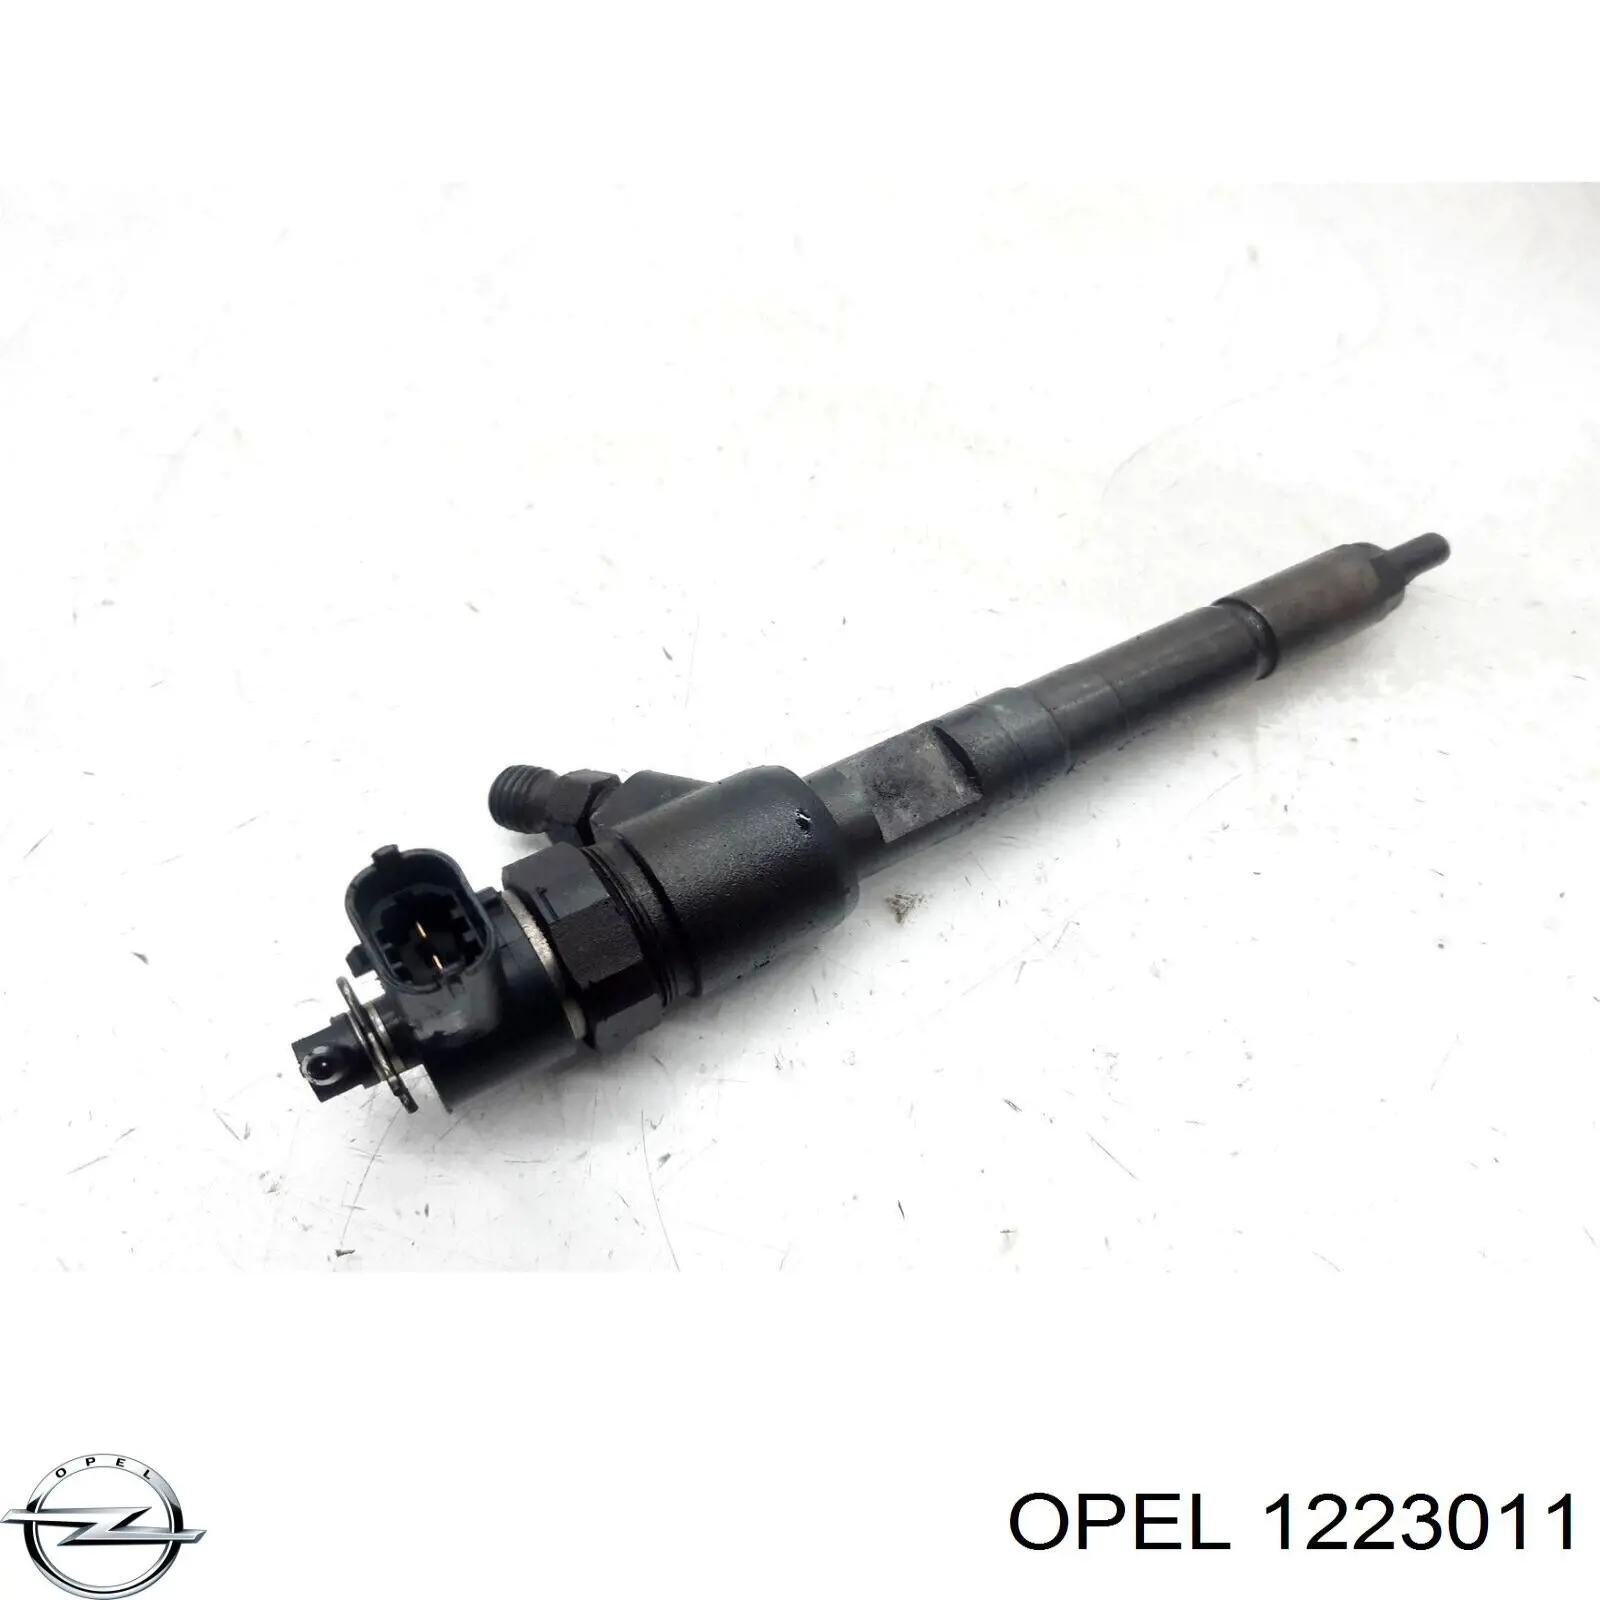 1223011 Opel piloto posterior izquierdo